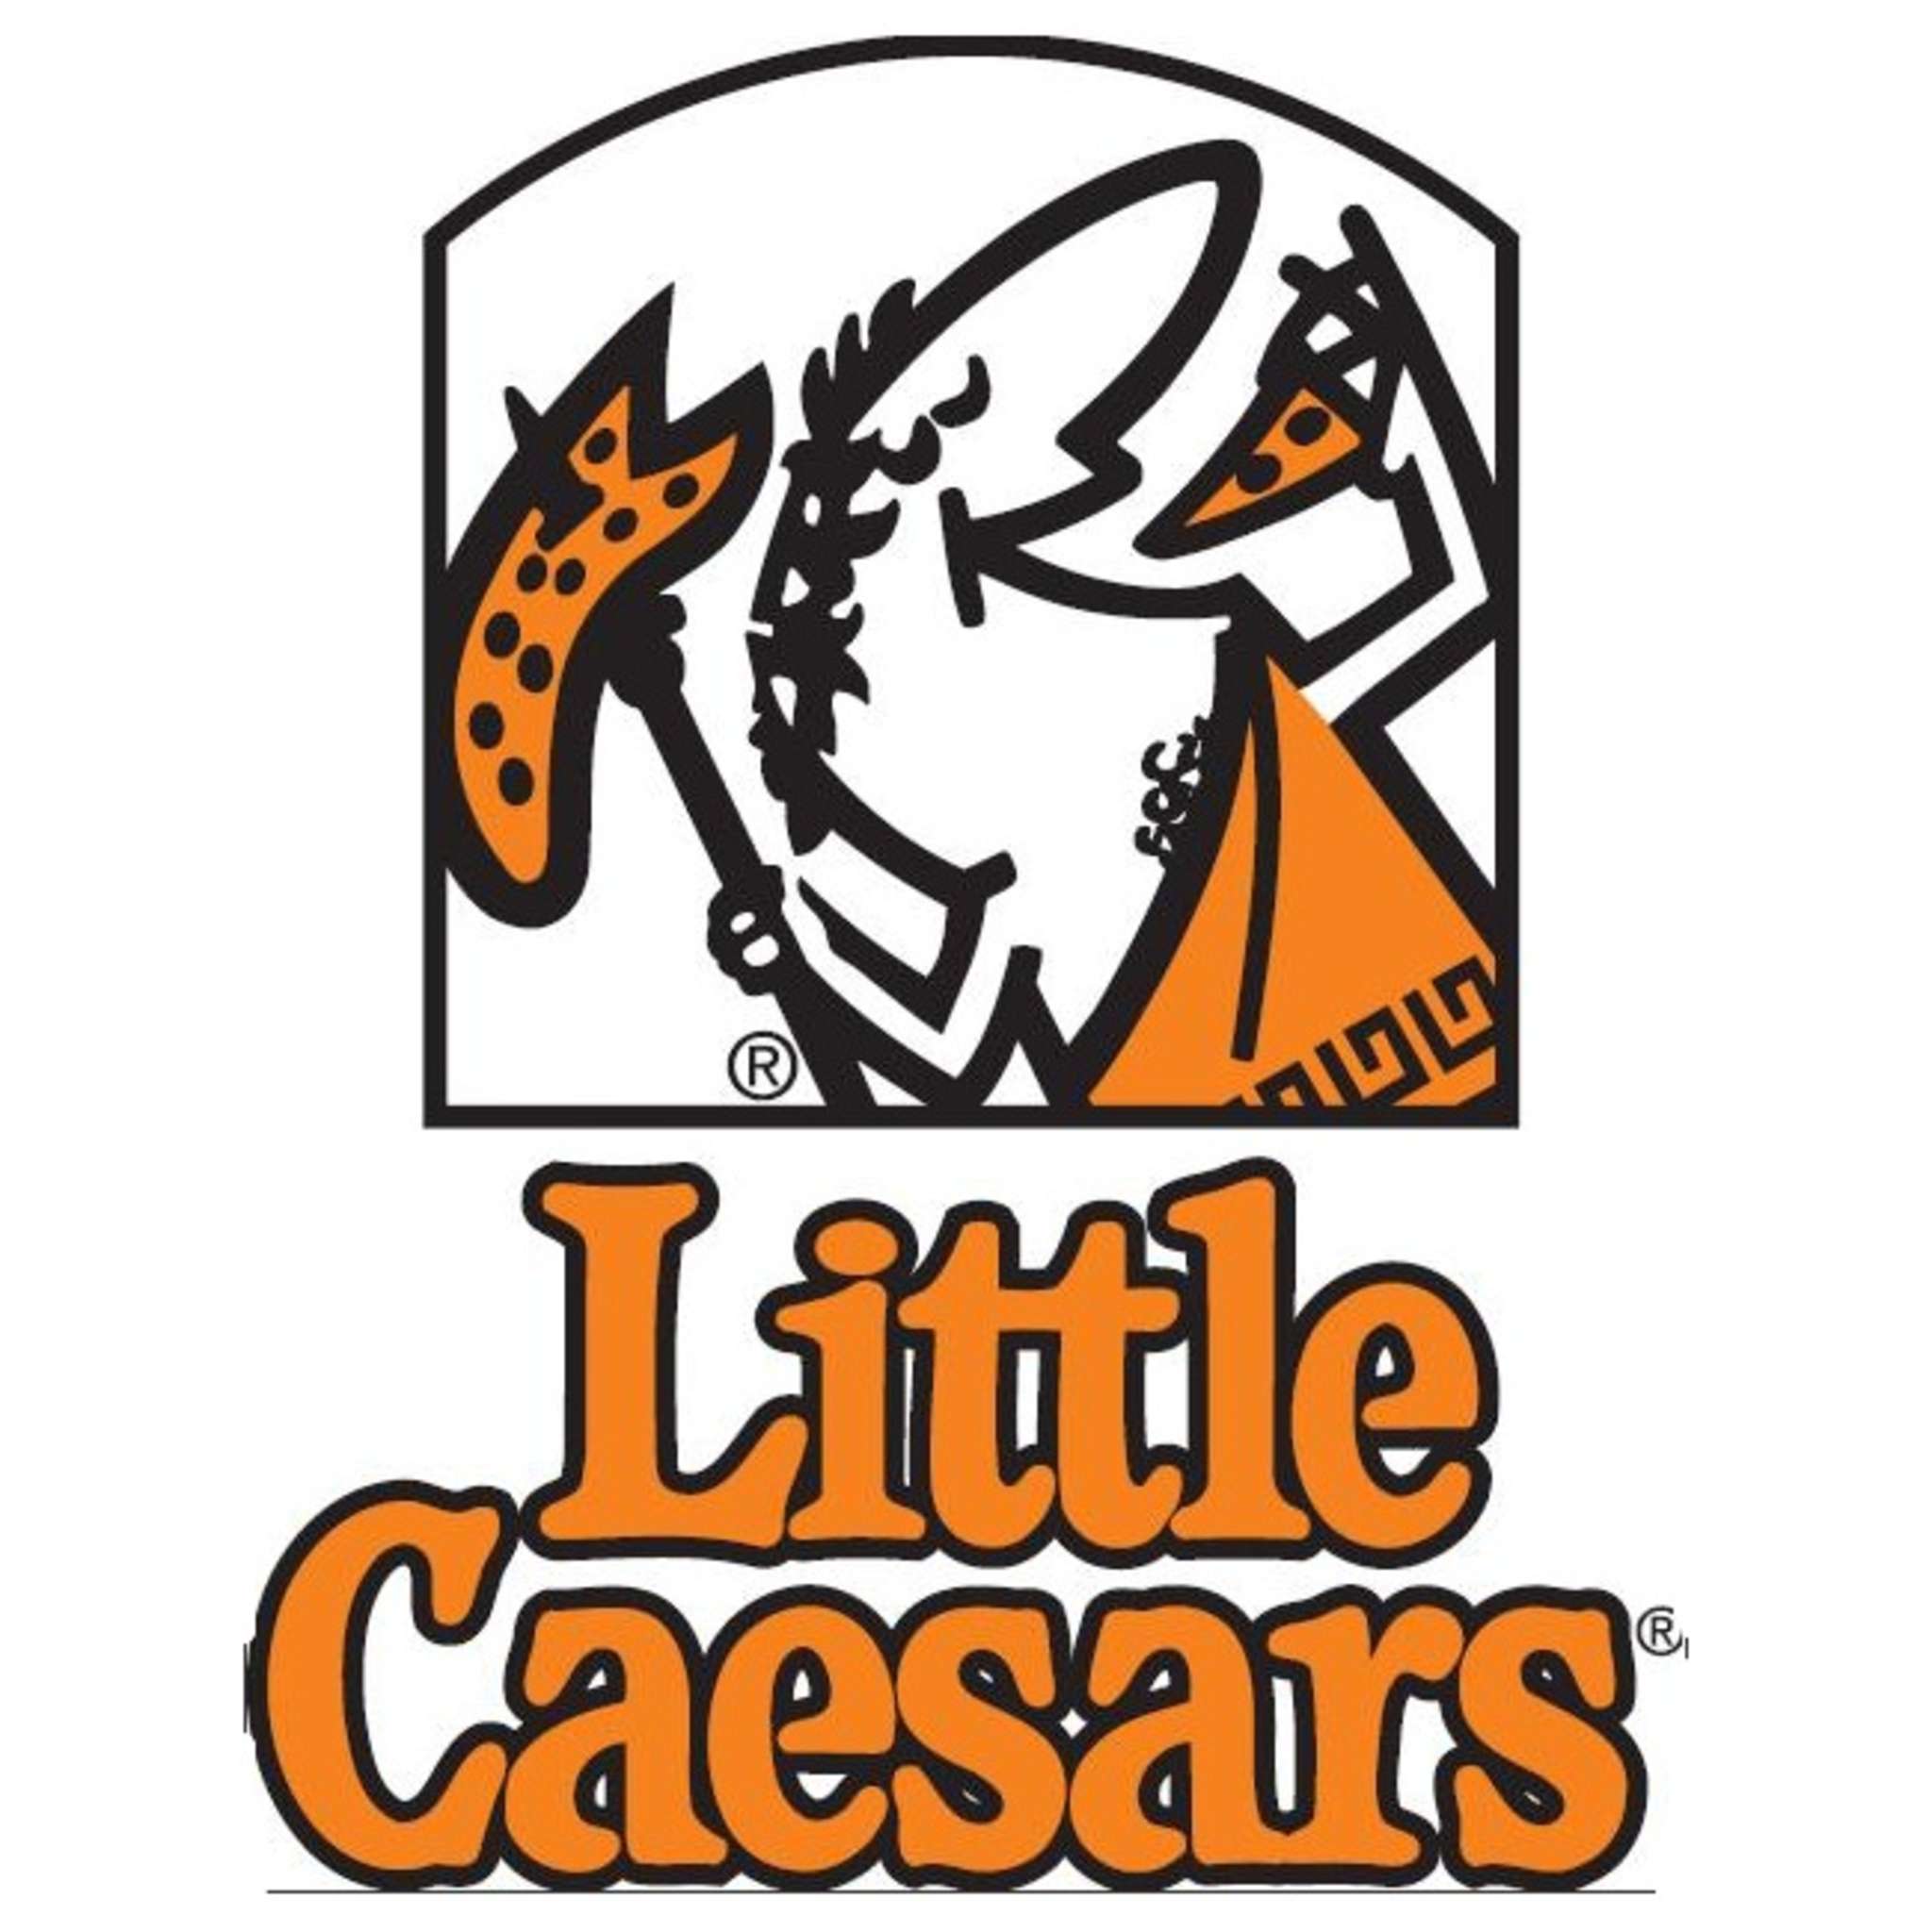 Little Caesars Pizza Logo - Little caesars pizza Logos